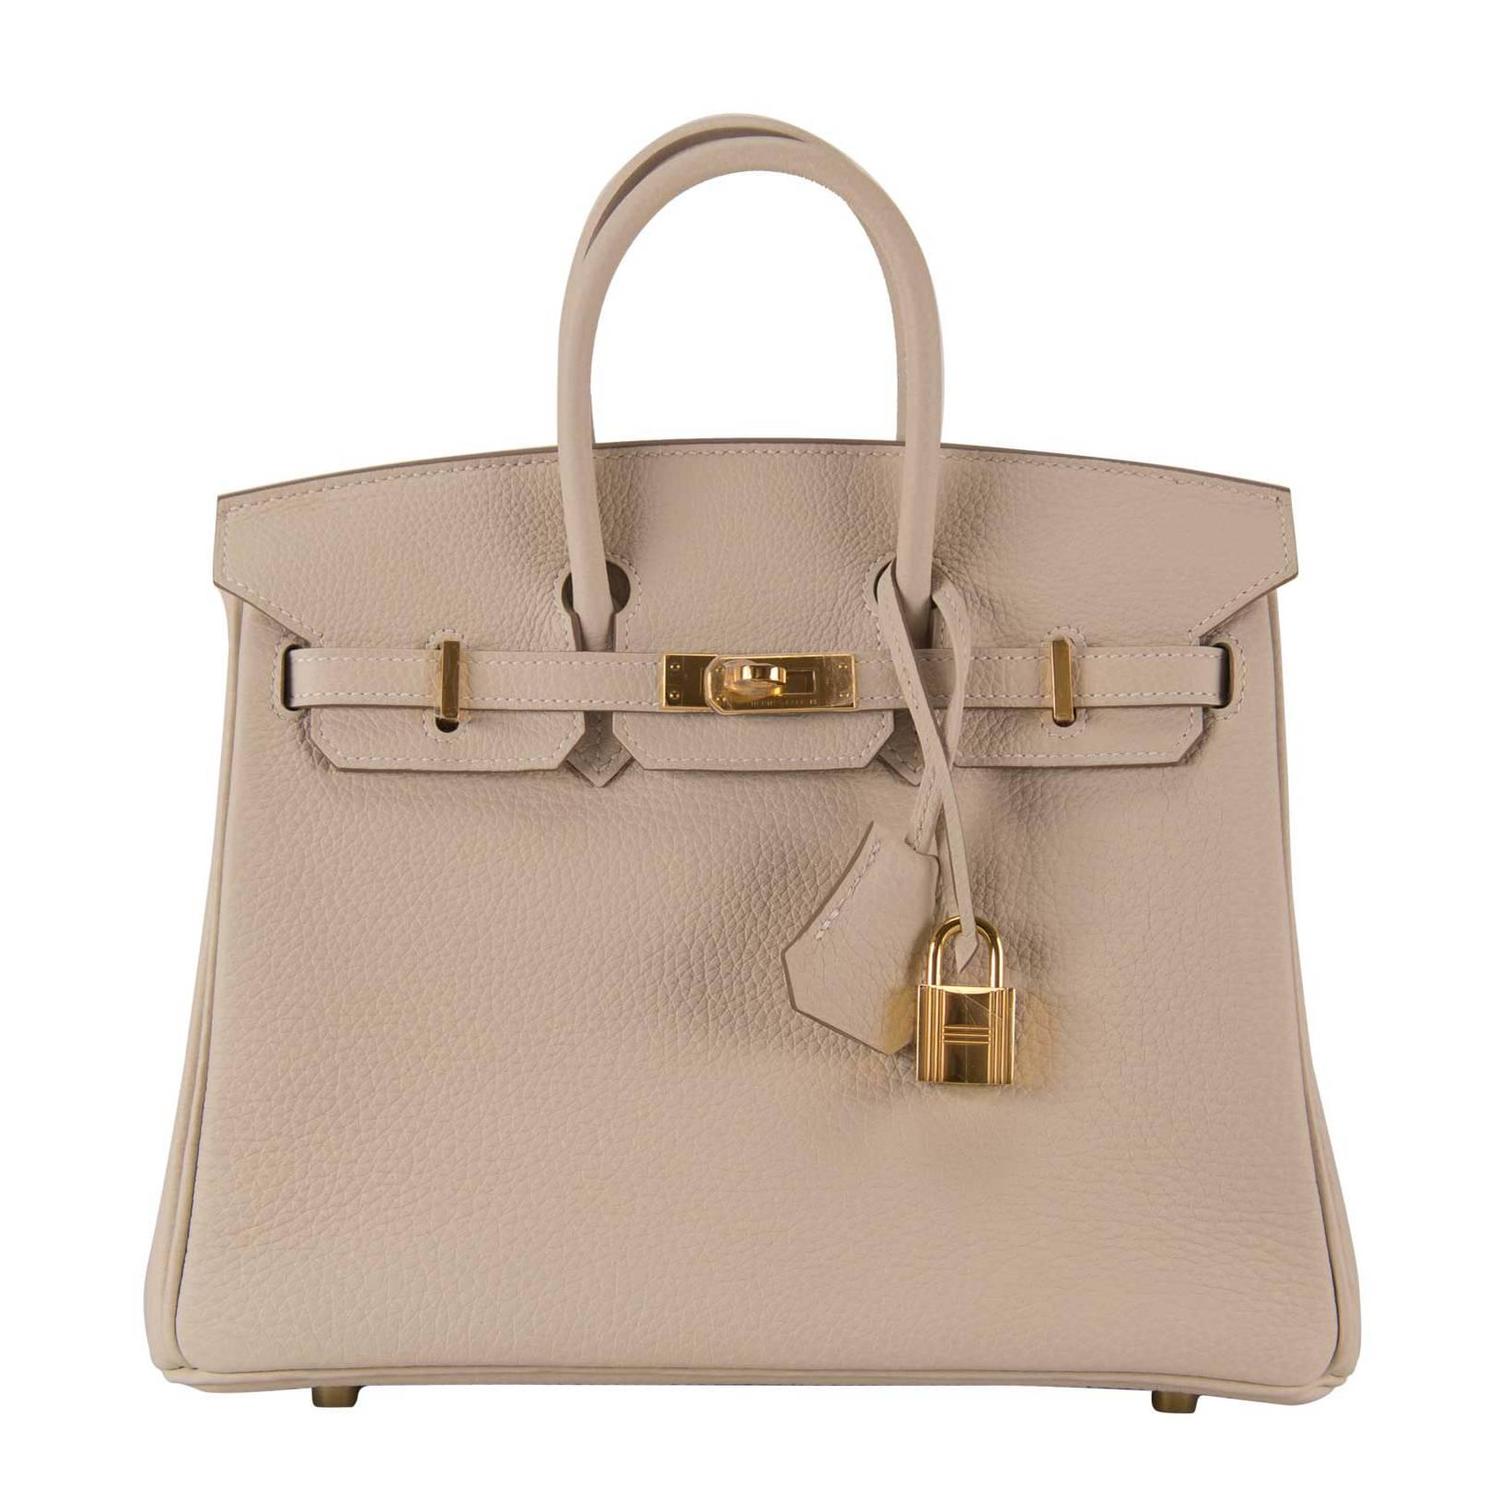 hermes handbag 2015, how much are birkin handbags